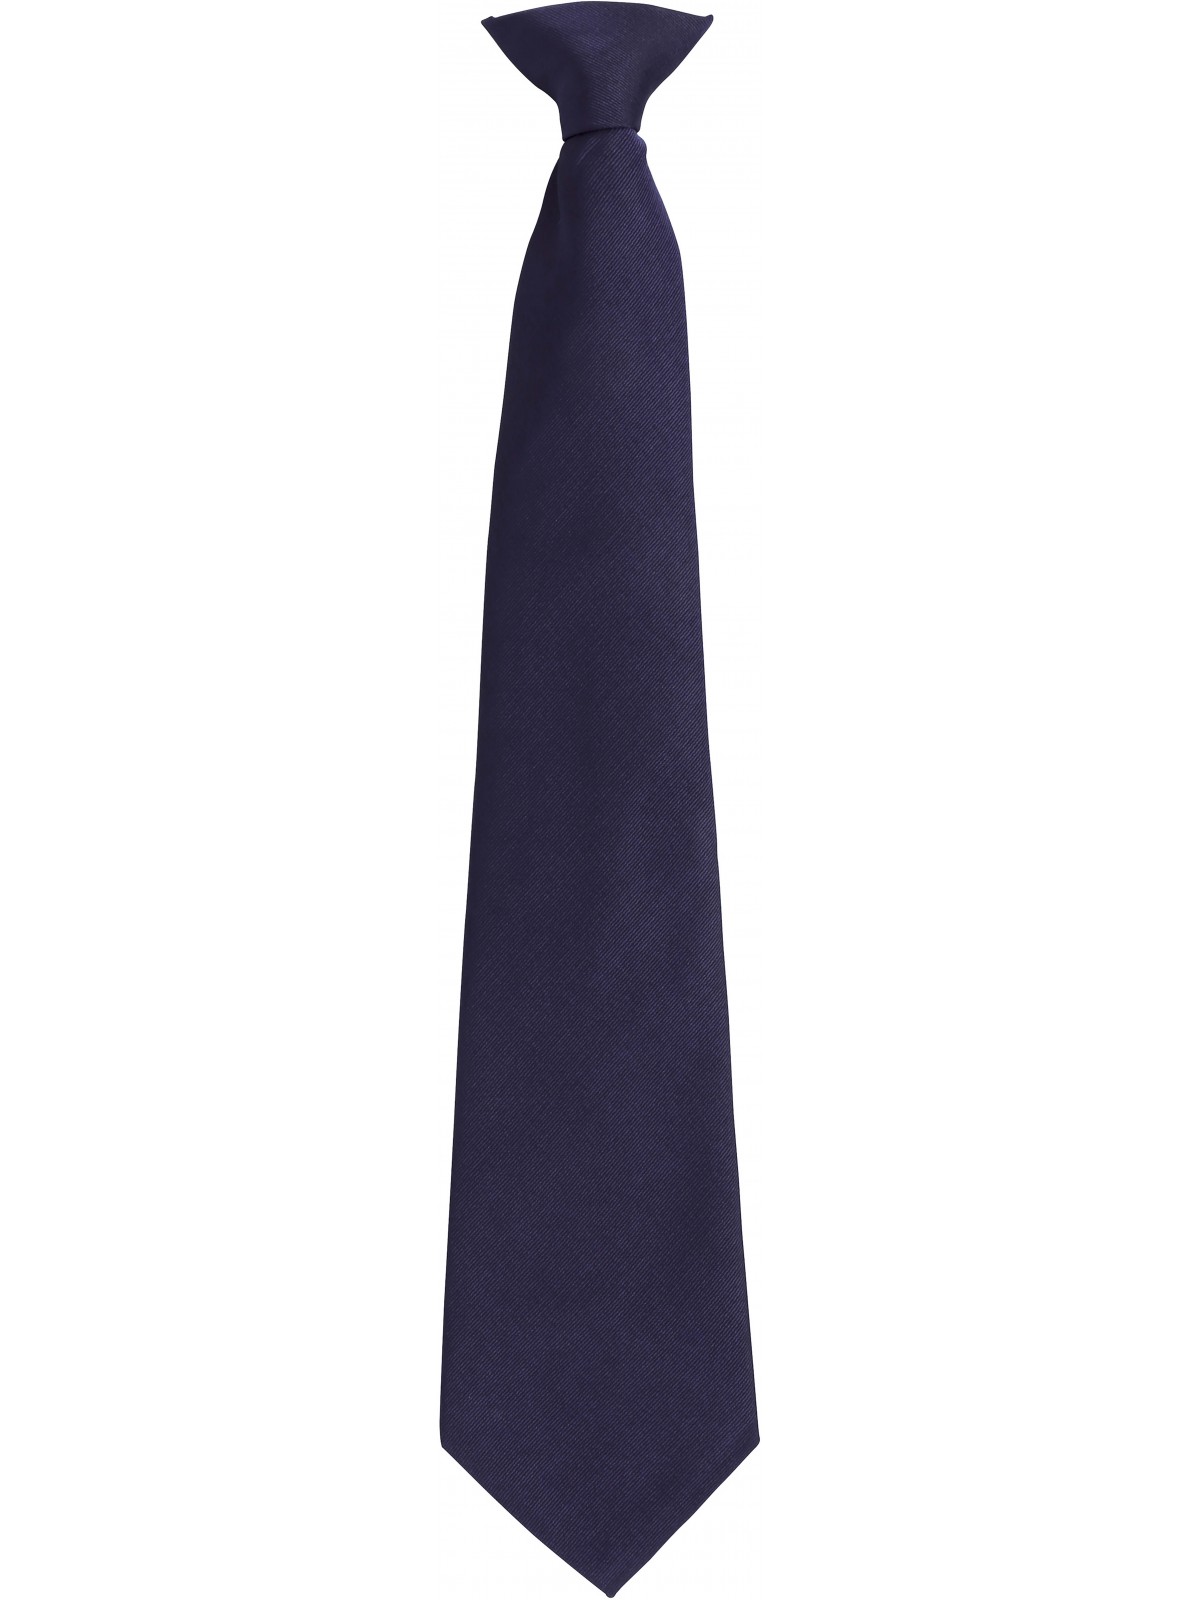 10-003 Cravate à cliper Premier personnalisé